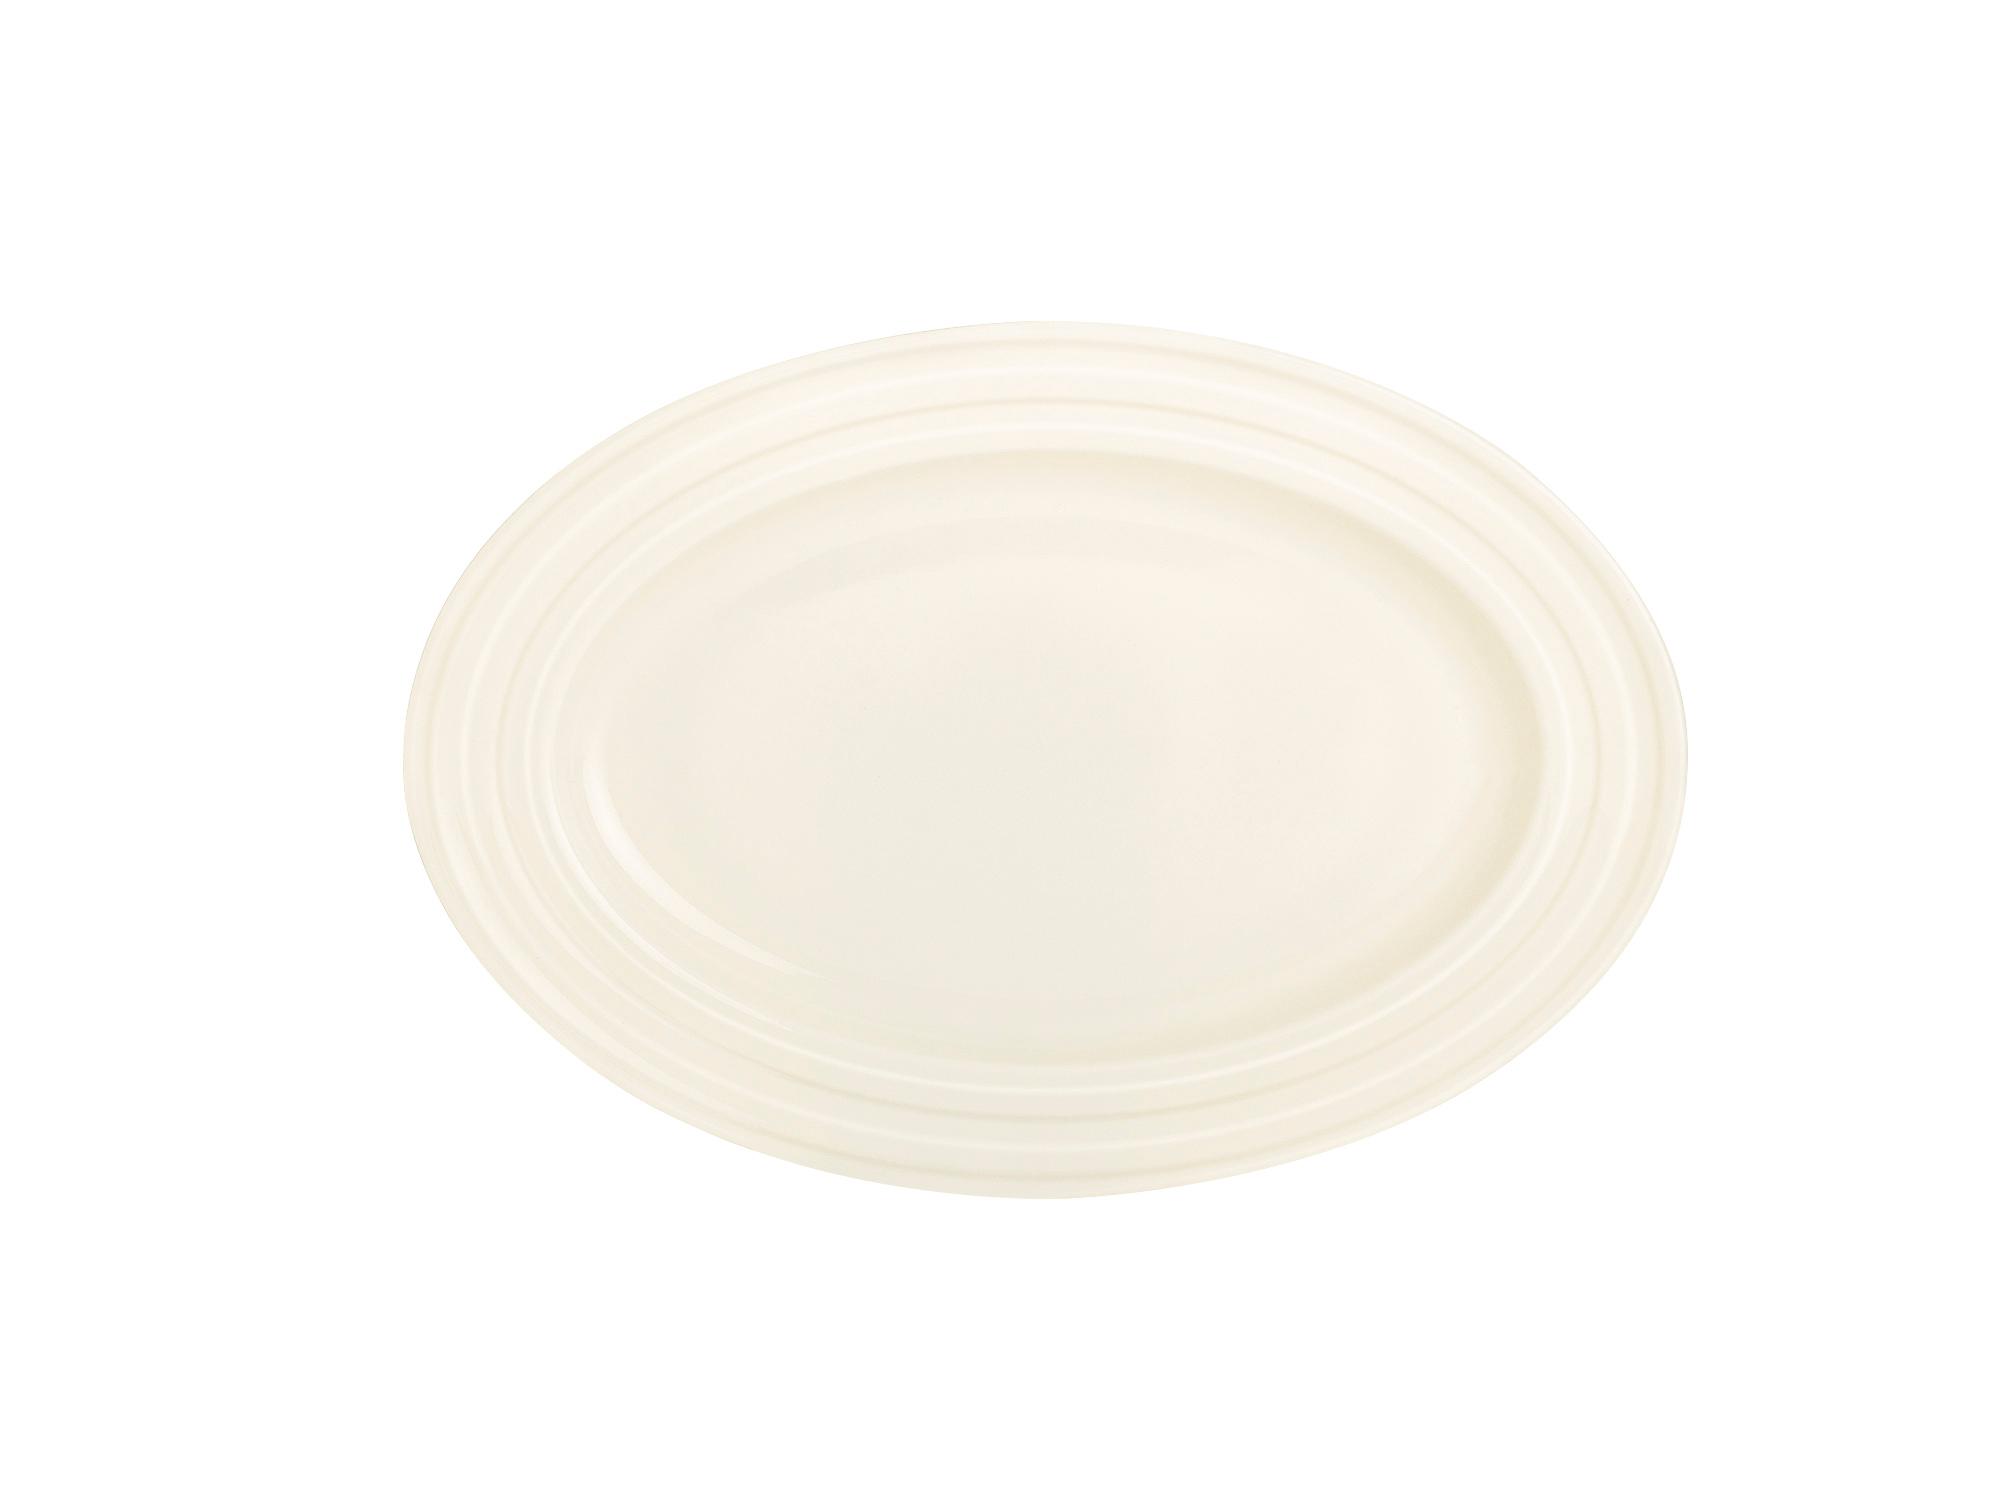 Perla oval dish, 210x140mm